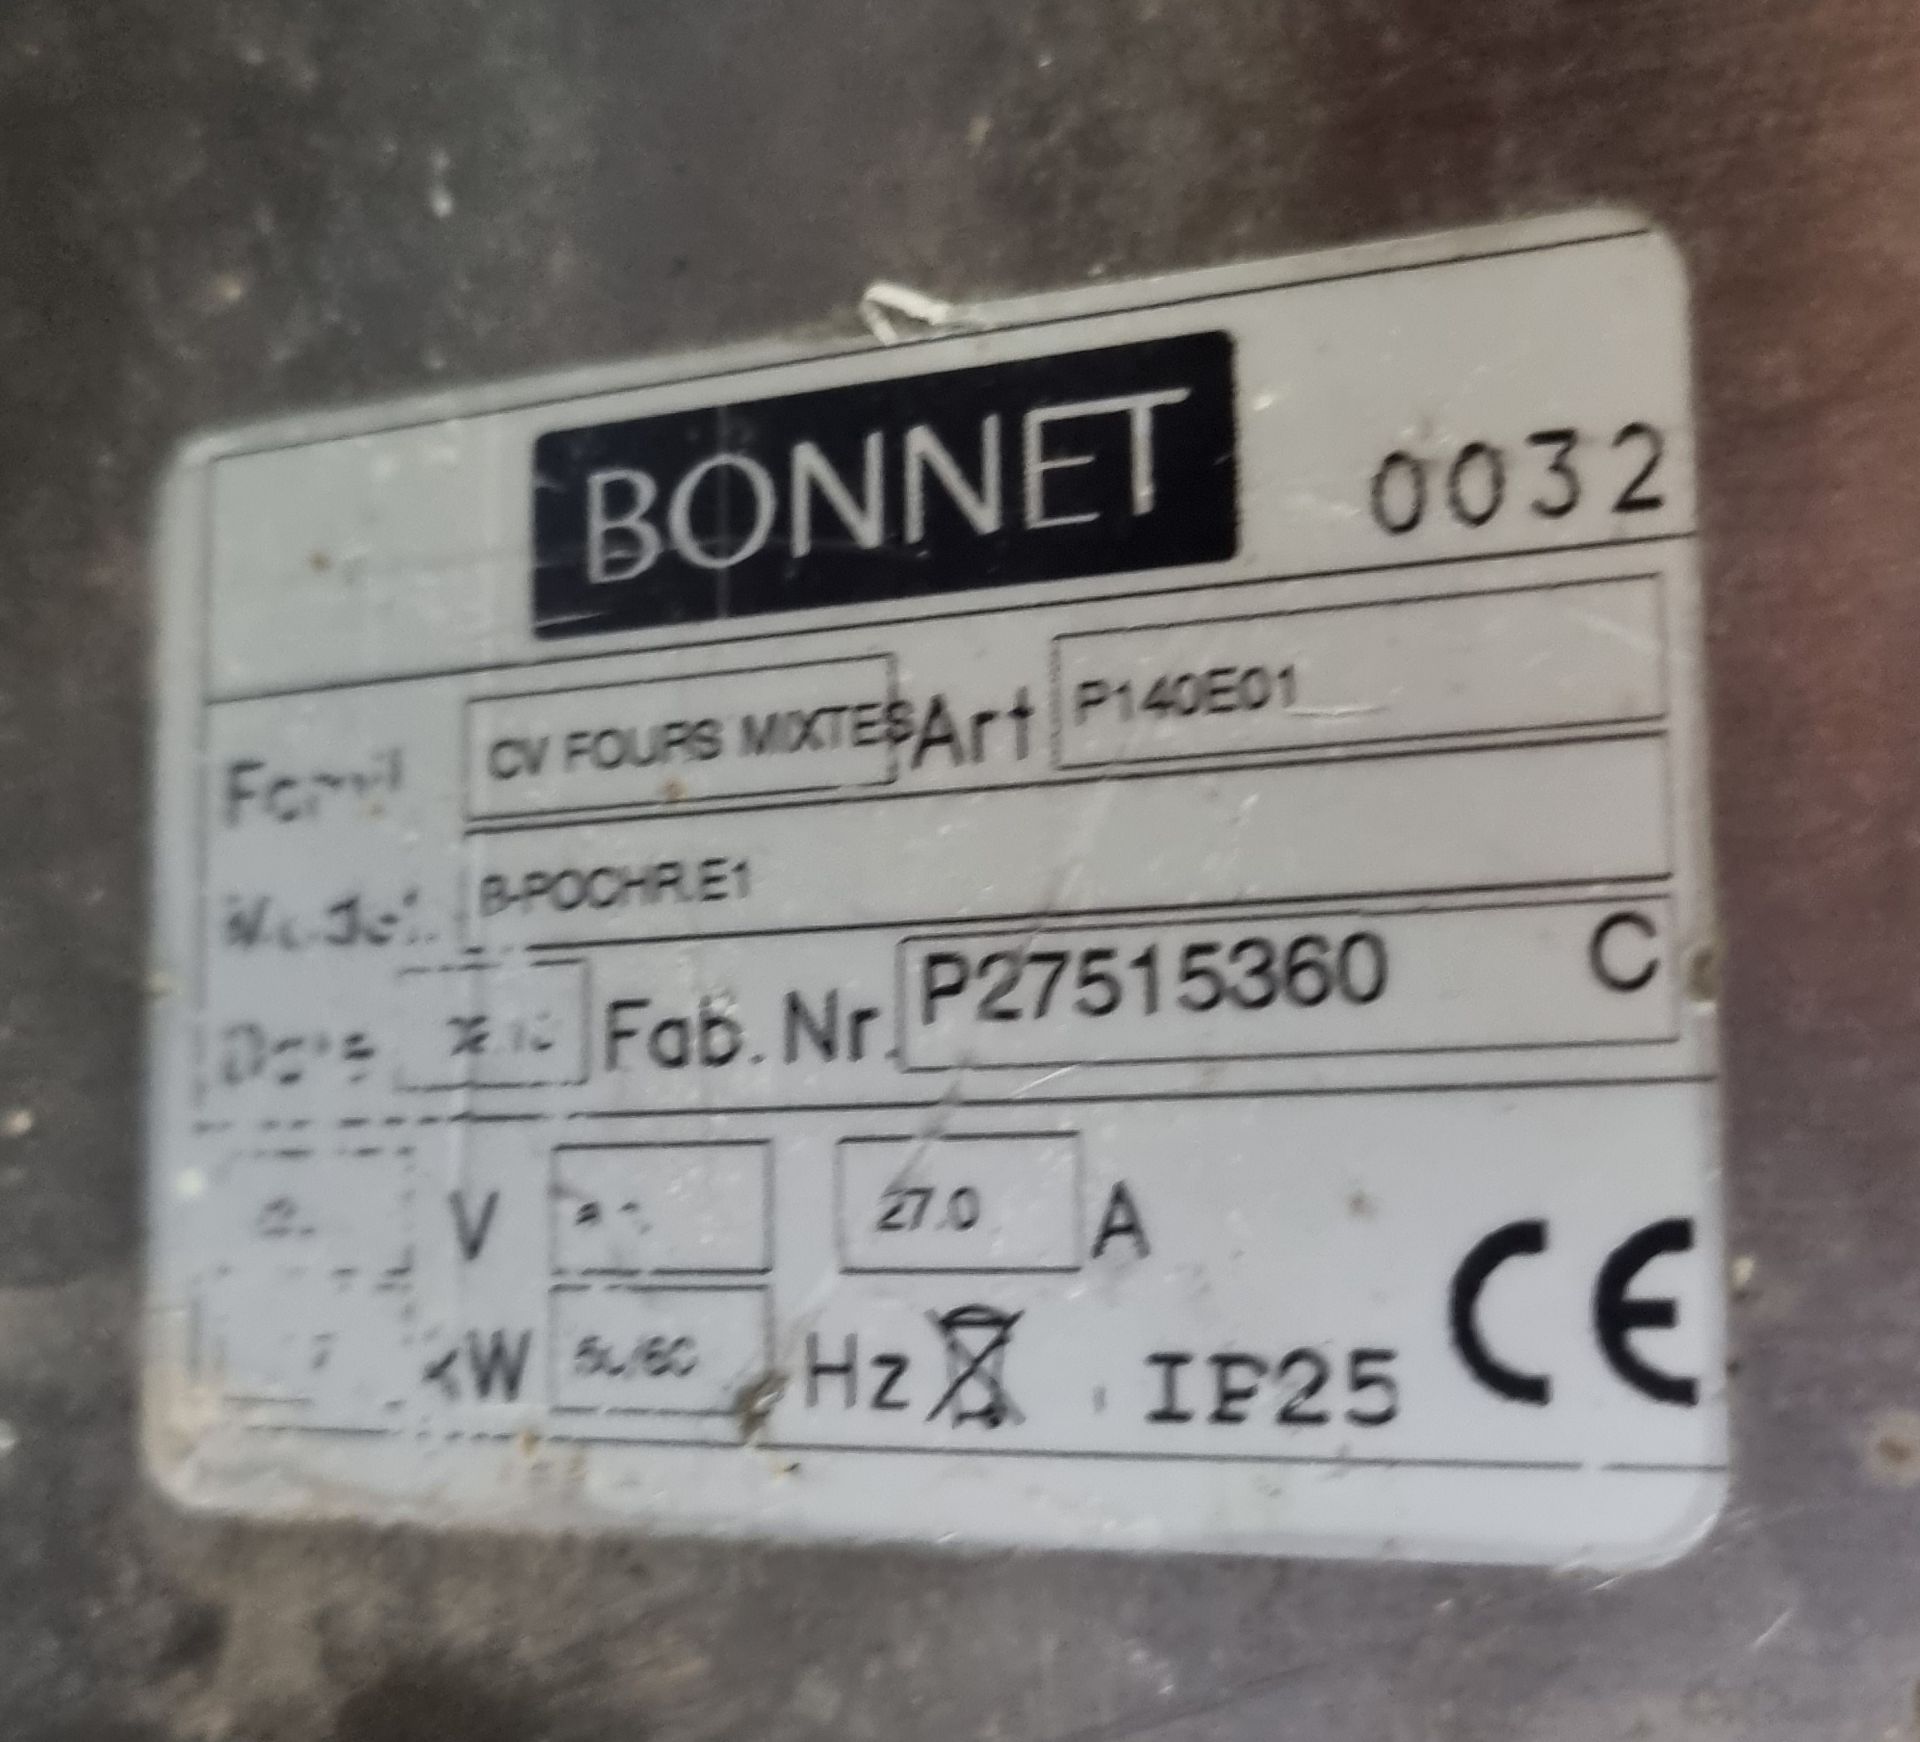 Bonnet B-POCHR.E1 combi oven - L770 x W800 x D560mm - Image 5 of 5